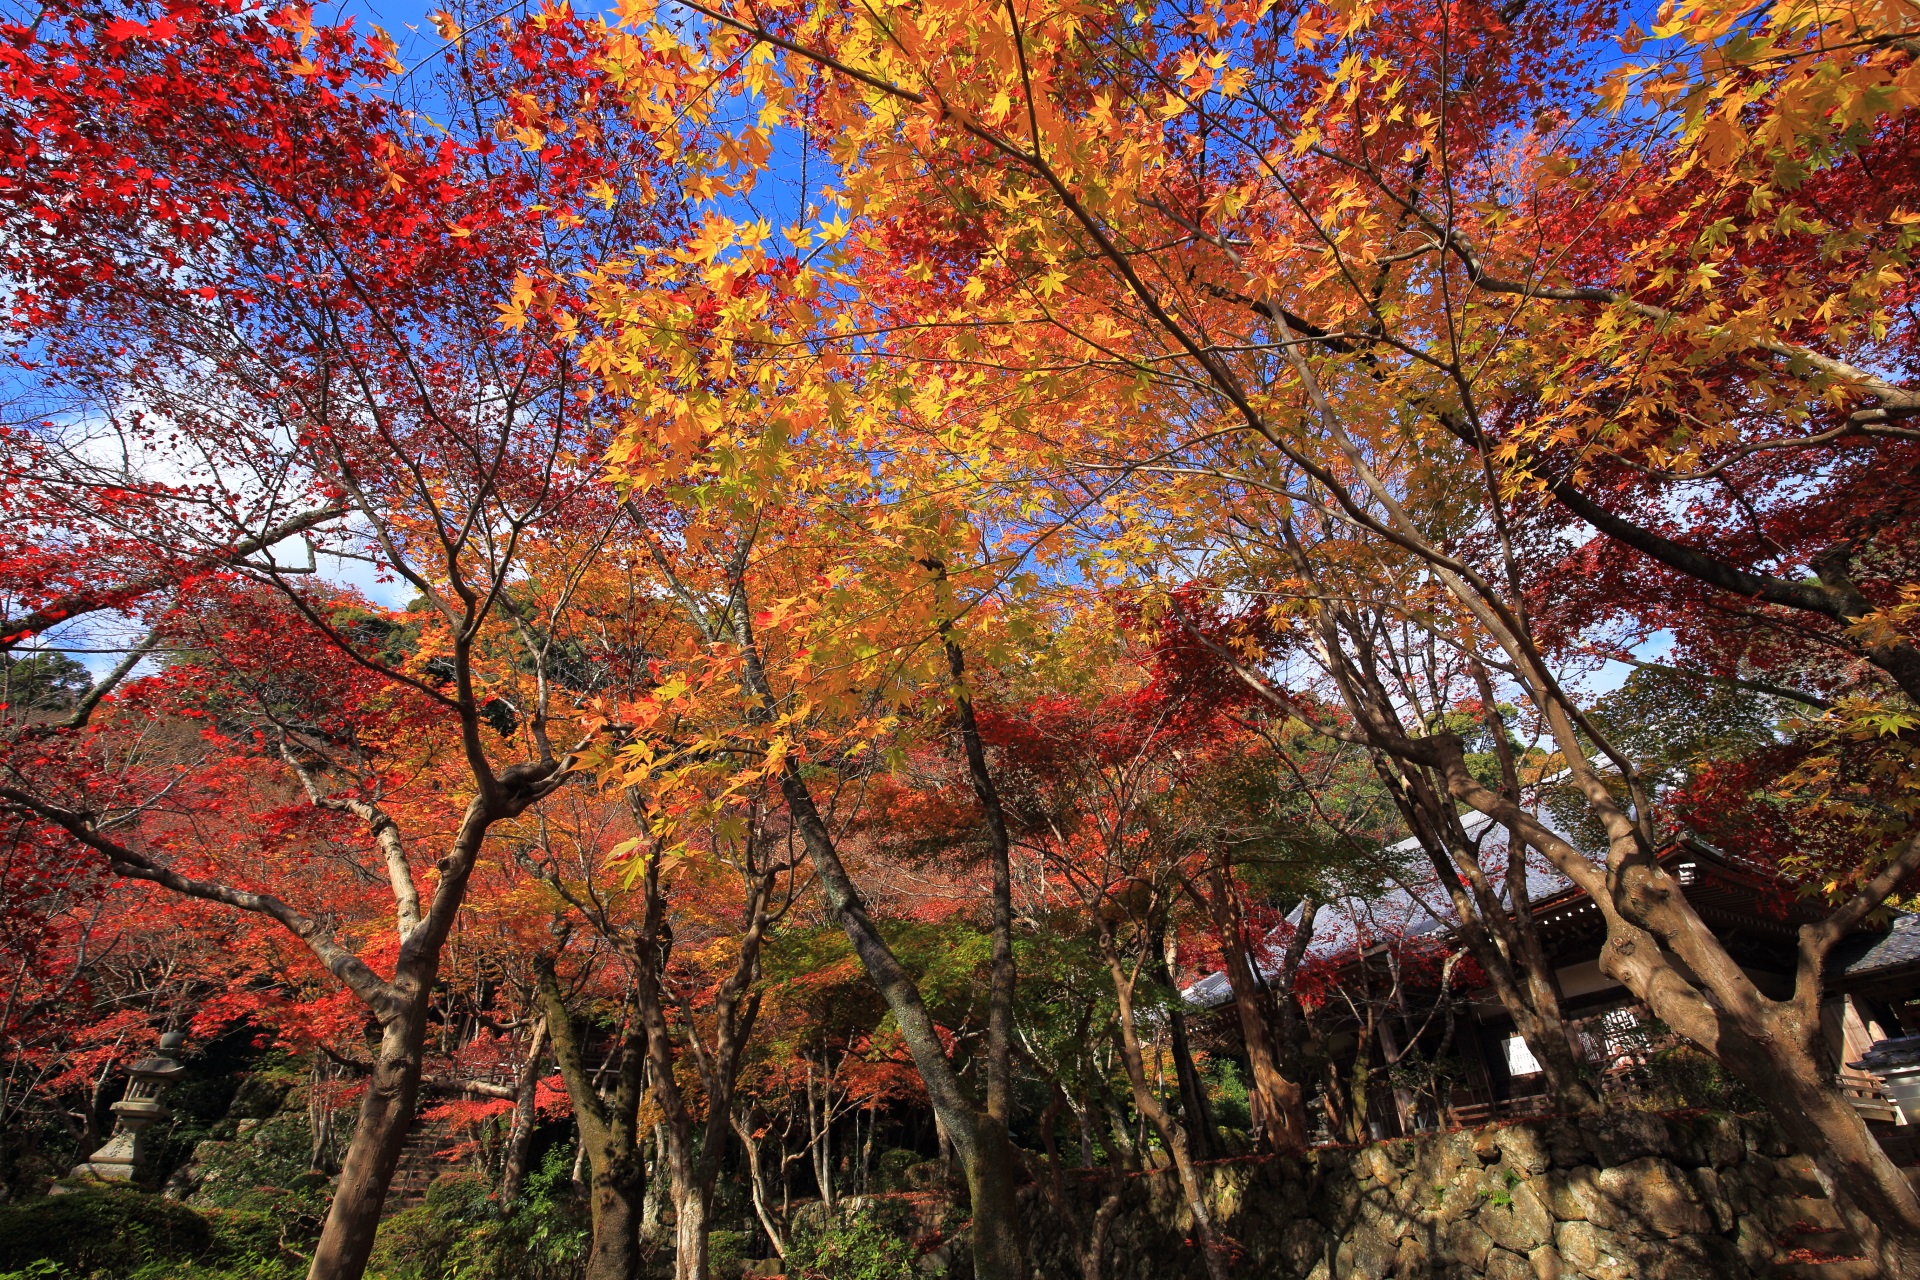 下から見上げた勝持寺の本堂や境内の色とりどりの煌く紅葉